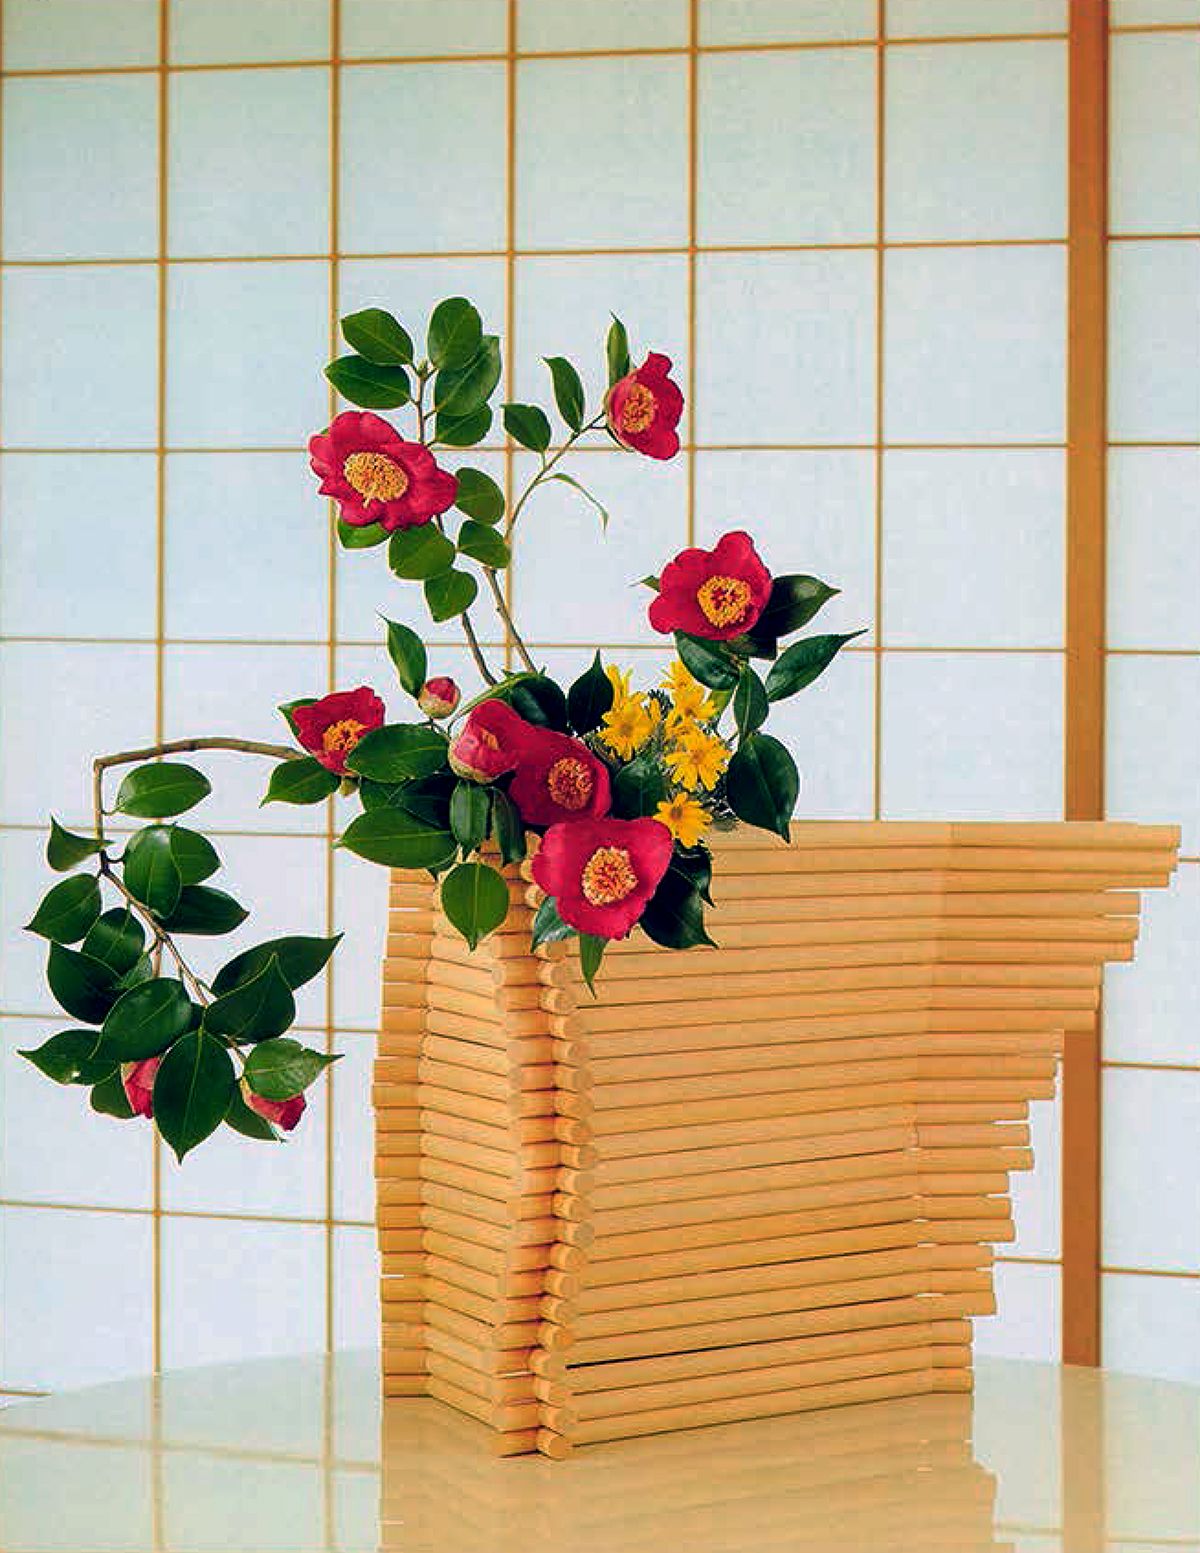 2月のいけばな 「安達曈子、椿百花」【生け花、いけばな、生花、華道】